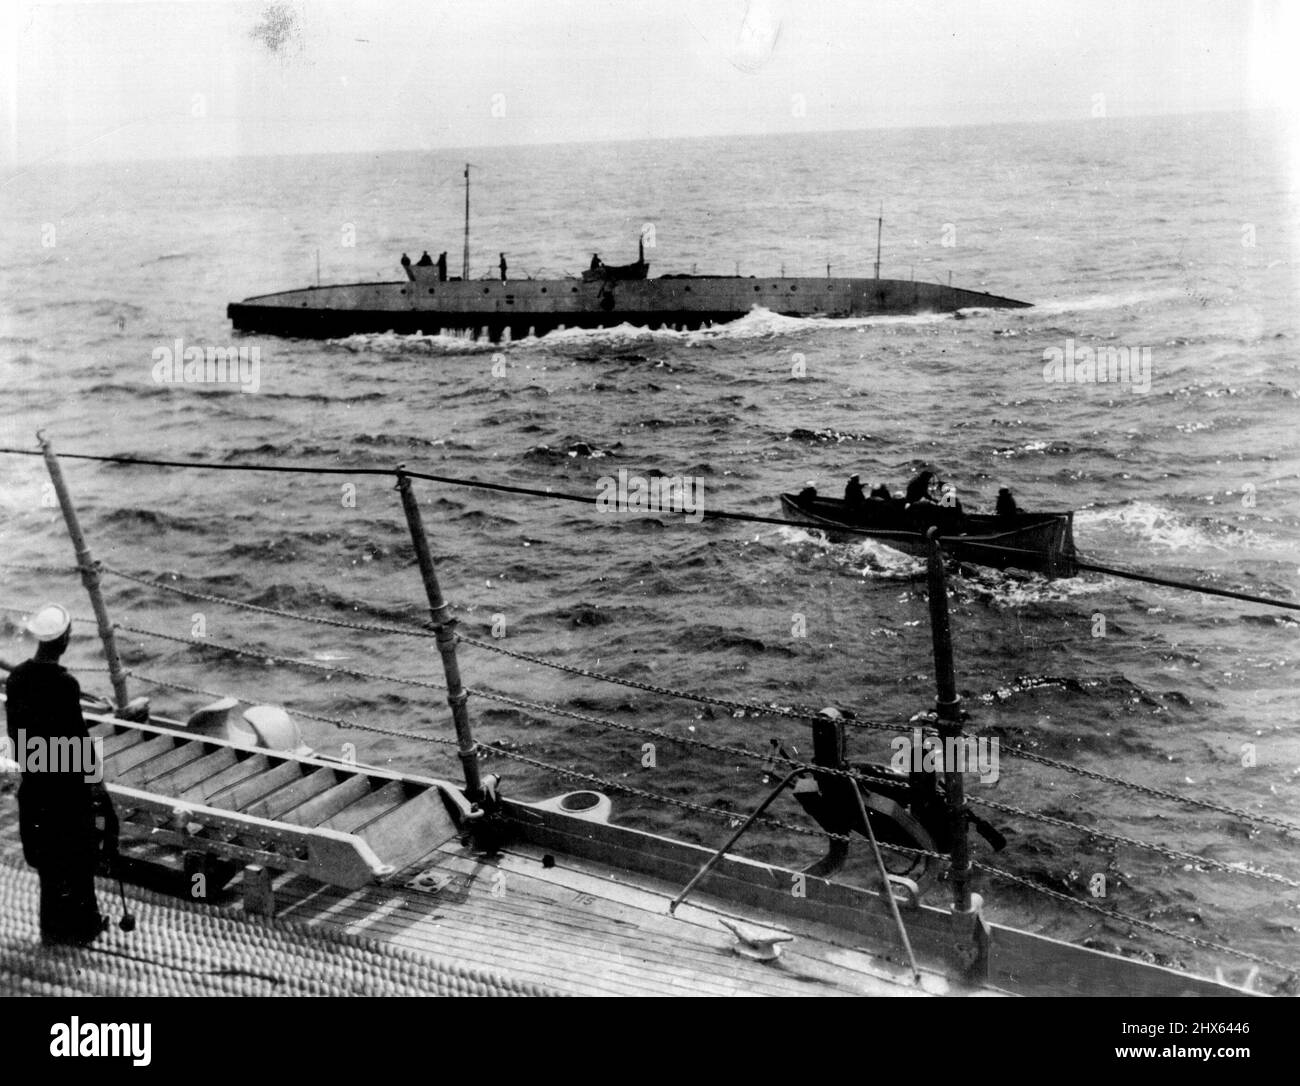 Nautilus acceptant Un "ascenseur" à Midsea: En mer - cette photo faite de l'URSS Le Wyoming montre le couteau auxiliaire de ce navire qui porte la ligne de lumière au nautilus en péril après que le sous-marin de Sir Hubert Wilkins a flashé vers l'autre côté qu'il était en déposition au milieu de l'oc de l'Atlantique. Avec la ligne de nuit, l'aubélier lourd a été transporté du navire de sauvetage et avec lui, l'embarcation transarctique a été remorquée à maïs ou à Queenstown, en Irlande. 17 août 1931. (Photo par International Newsreel photo). Banque D'Images